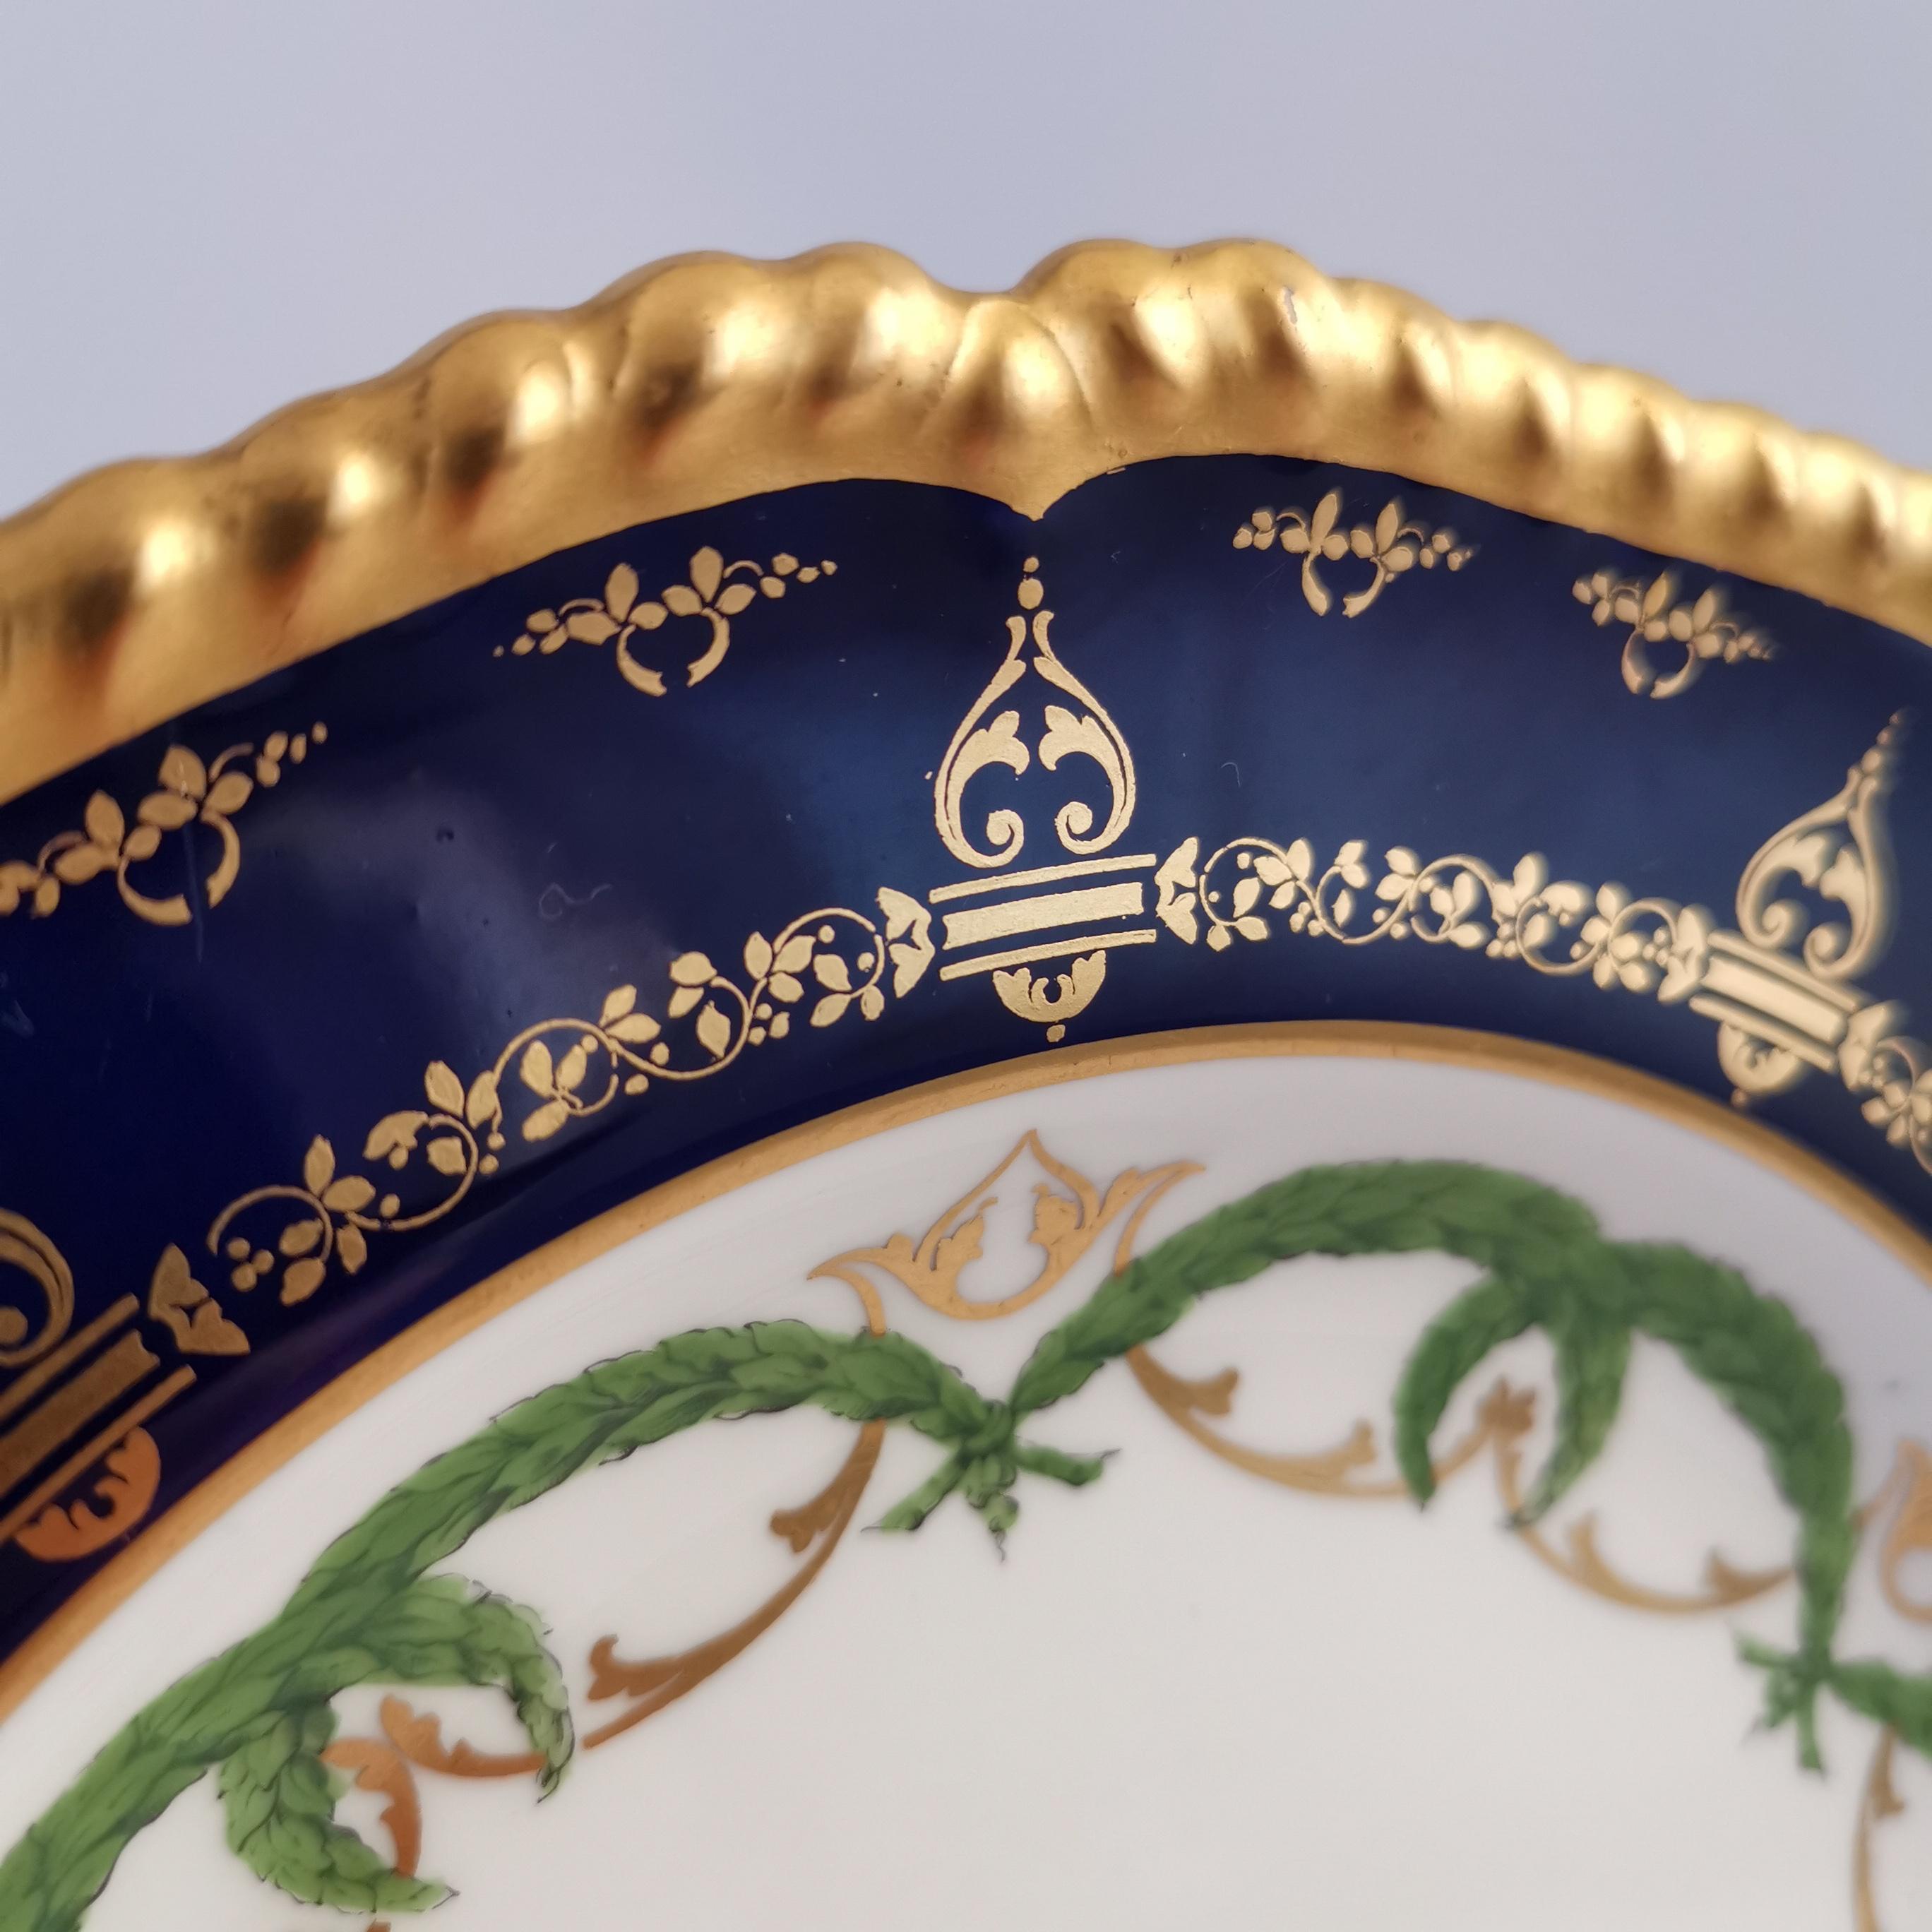 Royal Crown Derby Porcelain Plate, Cobalt Blue, Gilt and Billingsley Roses, 1907 2